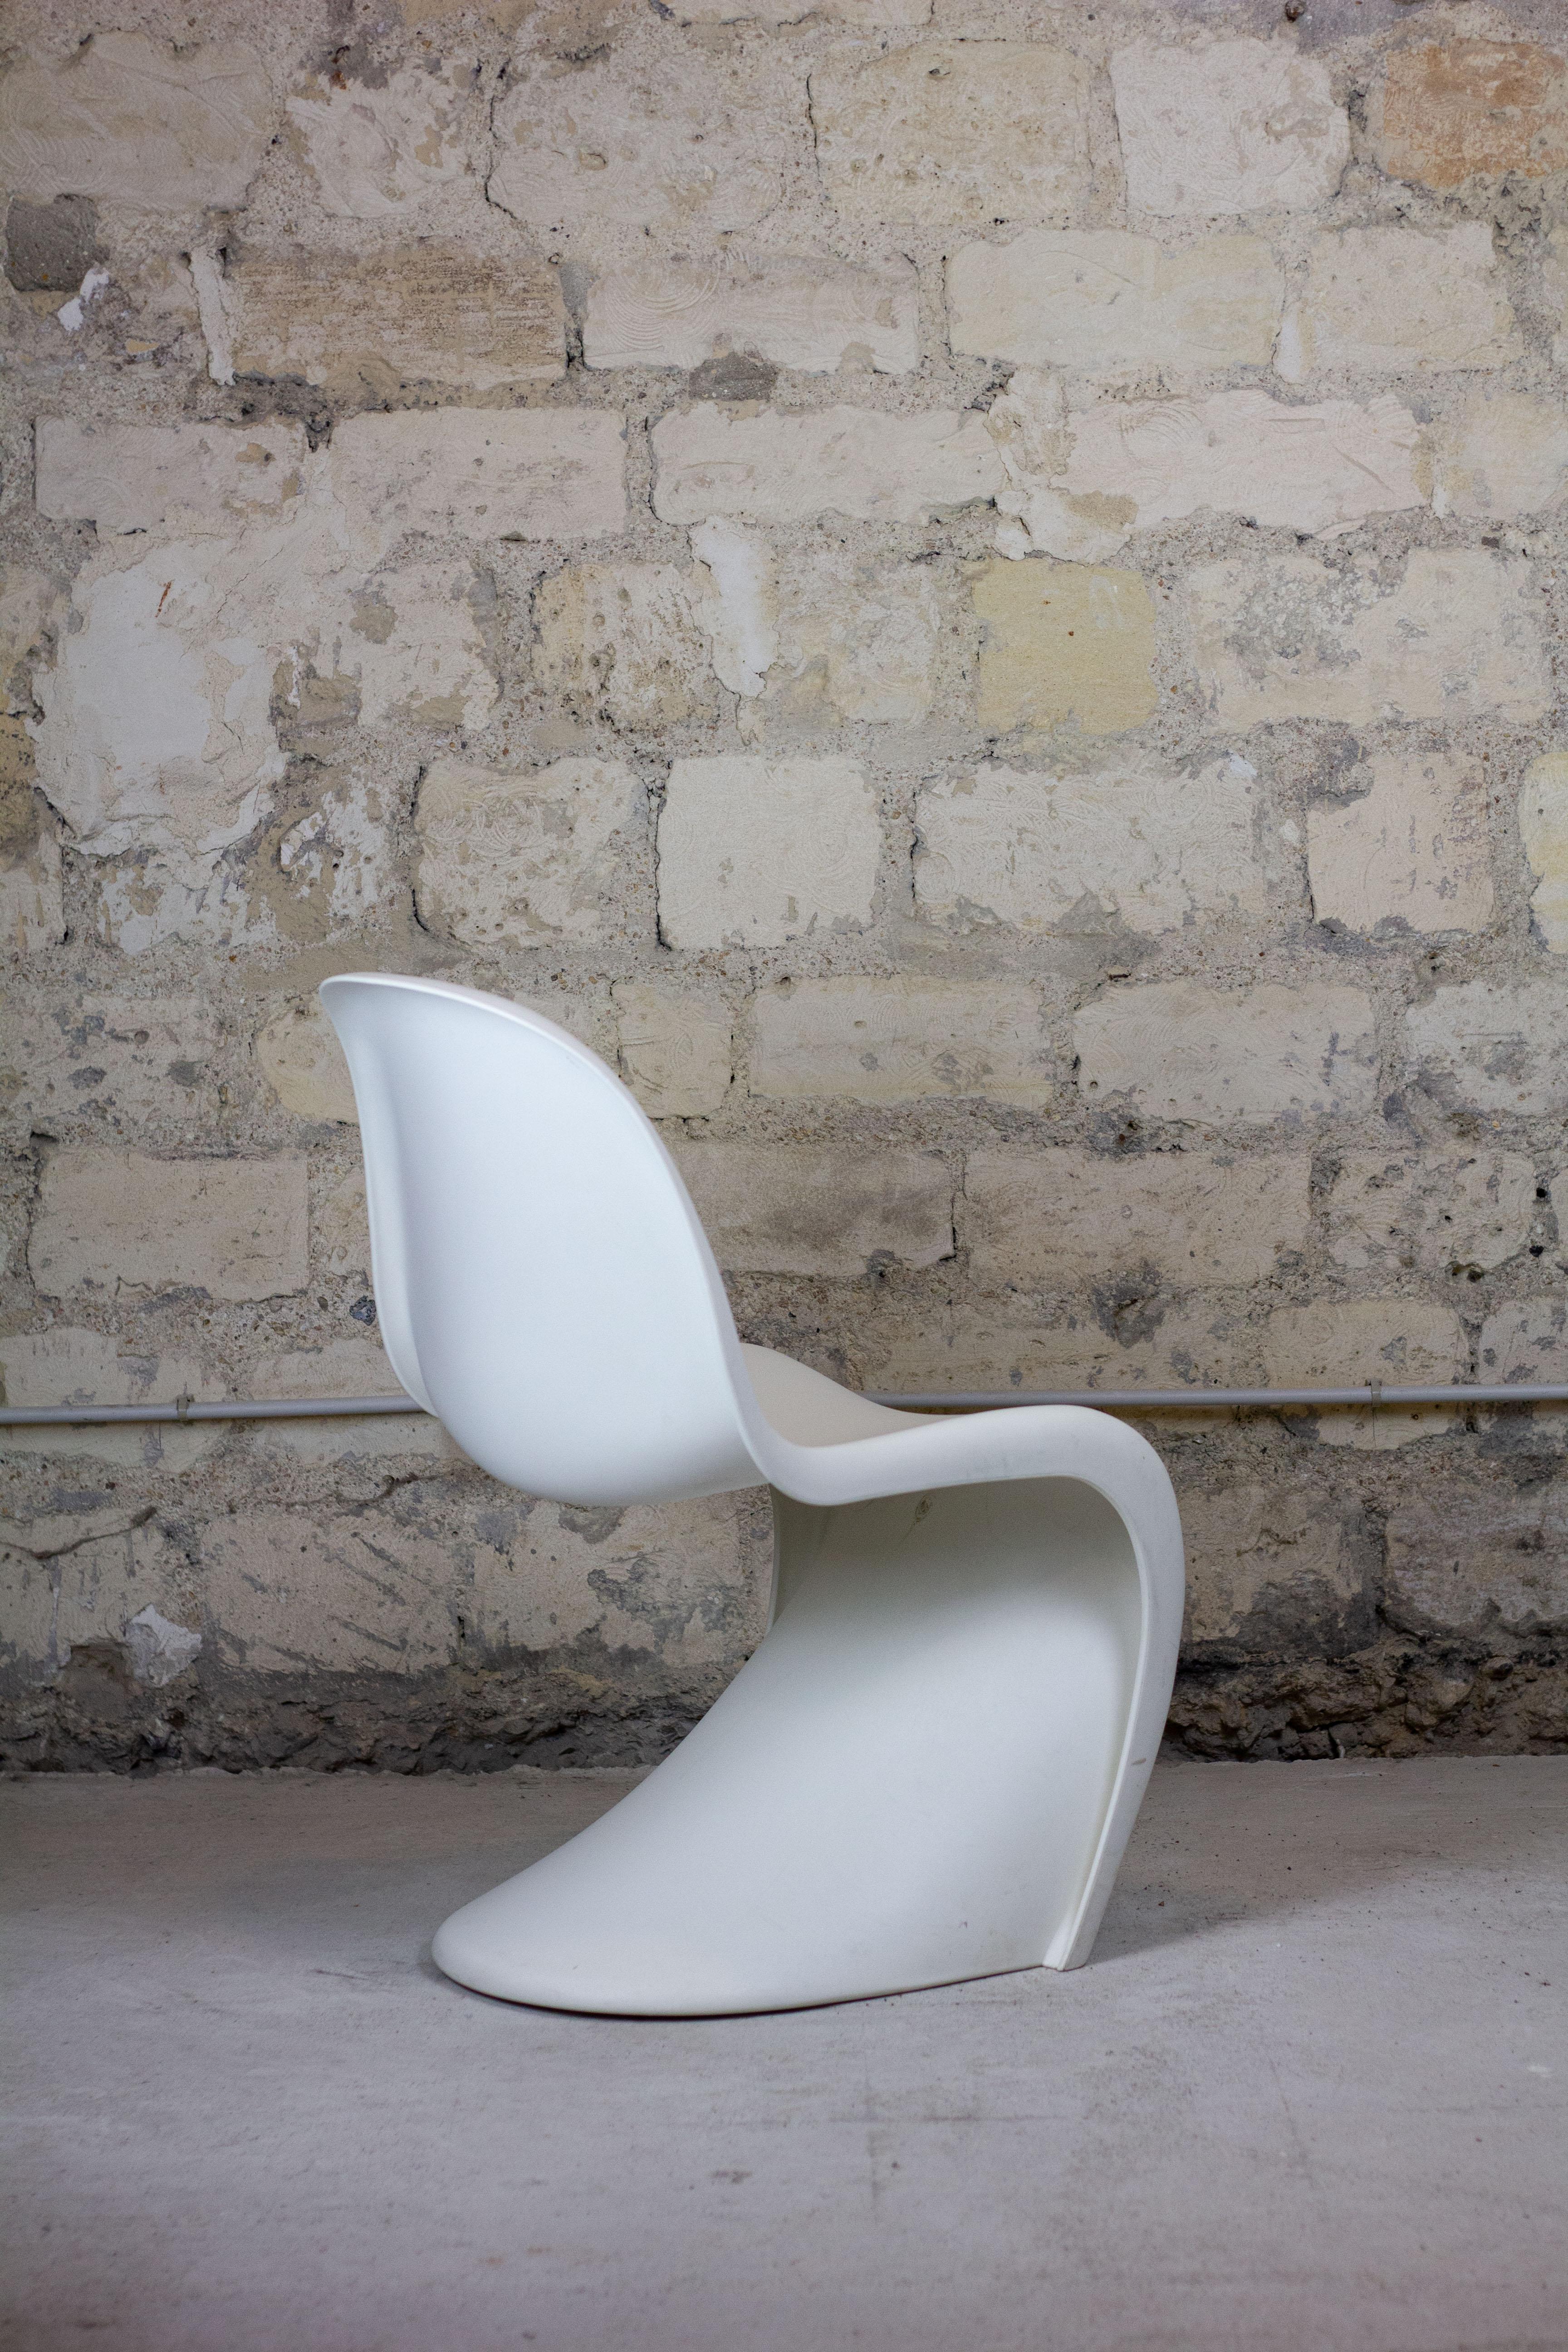 Lot de 8 chaises blanches par Verner Panton, édition Vitra. Der Designklassiker aus den 1960er Jahren von Verner Panton, hergestellt von Vitra, ist mit einer futuristischen Struktur versehen. Die Liege 